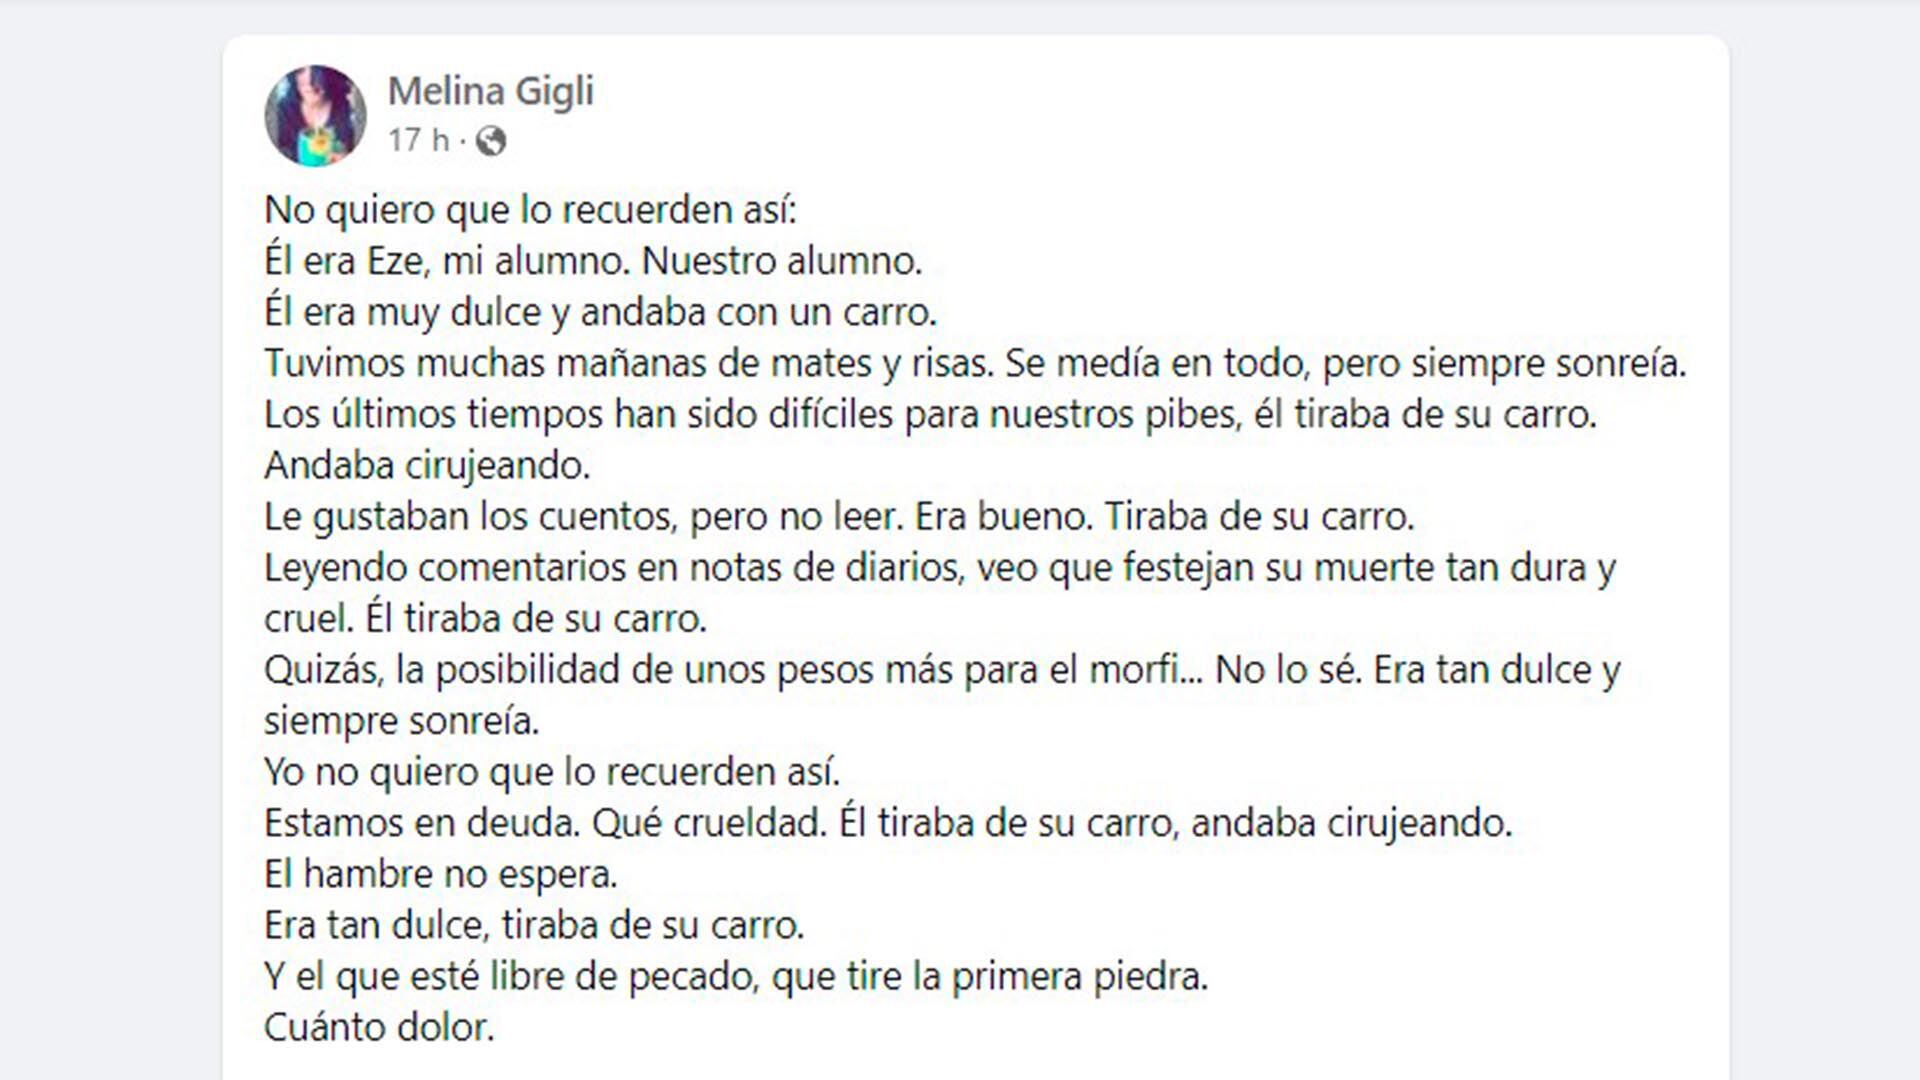 mensaje de melina gigli, docente del joven que murió electrocutado por robar cables en Rosario